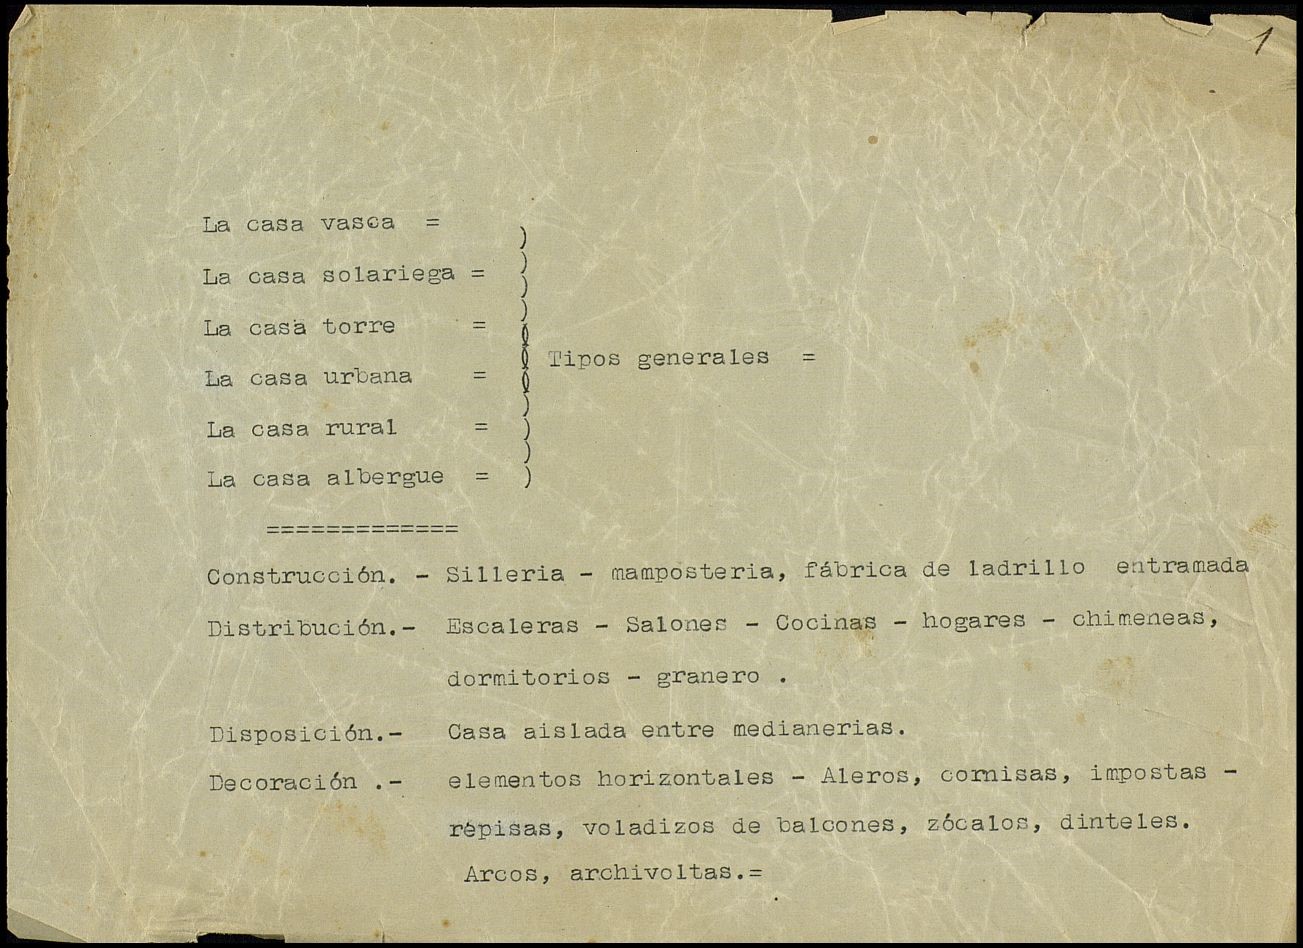 Texto original sobre tipos, construcción, distribución, disposición y decoración de las casas en el norte de España